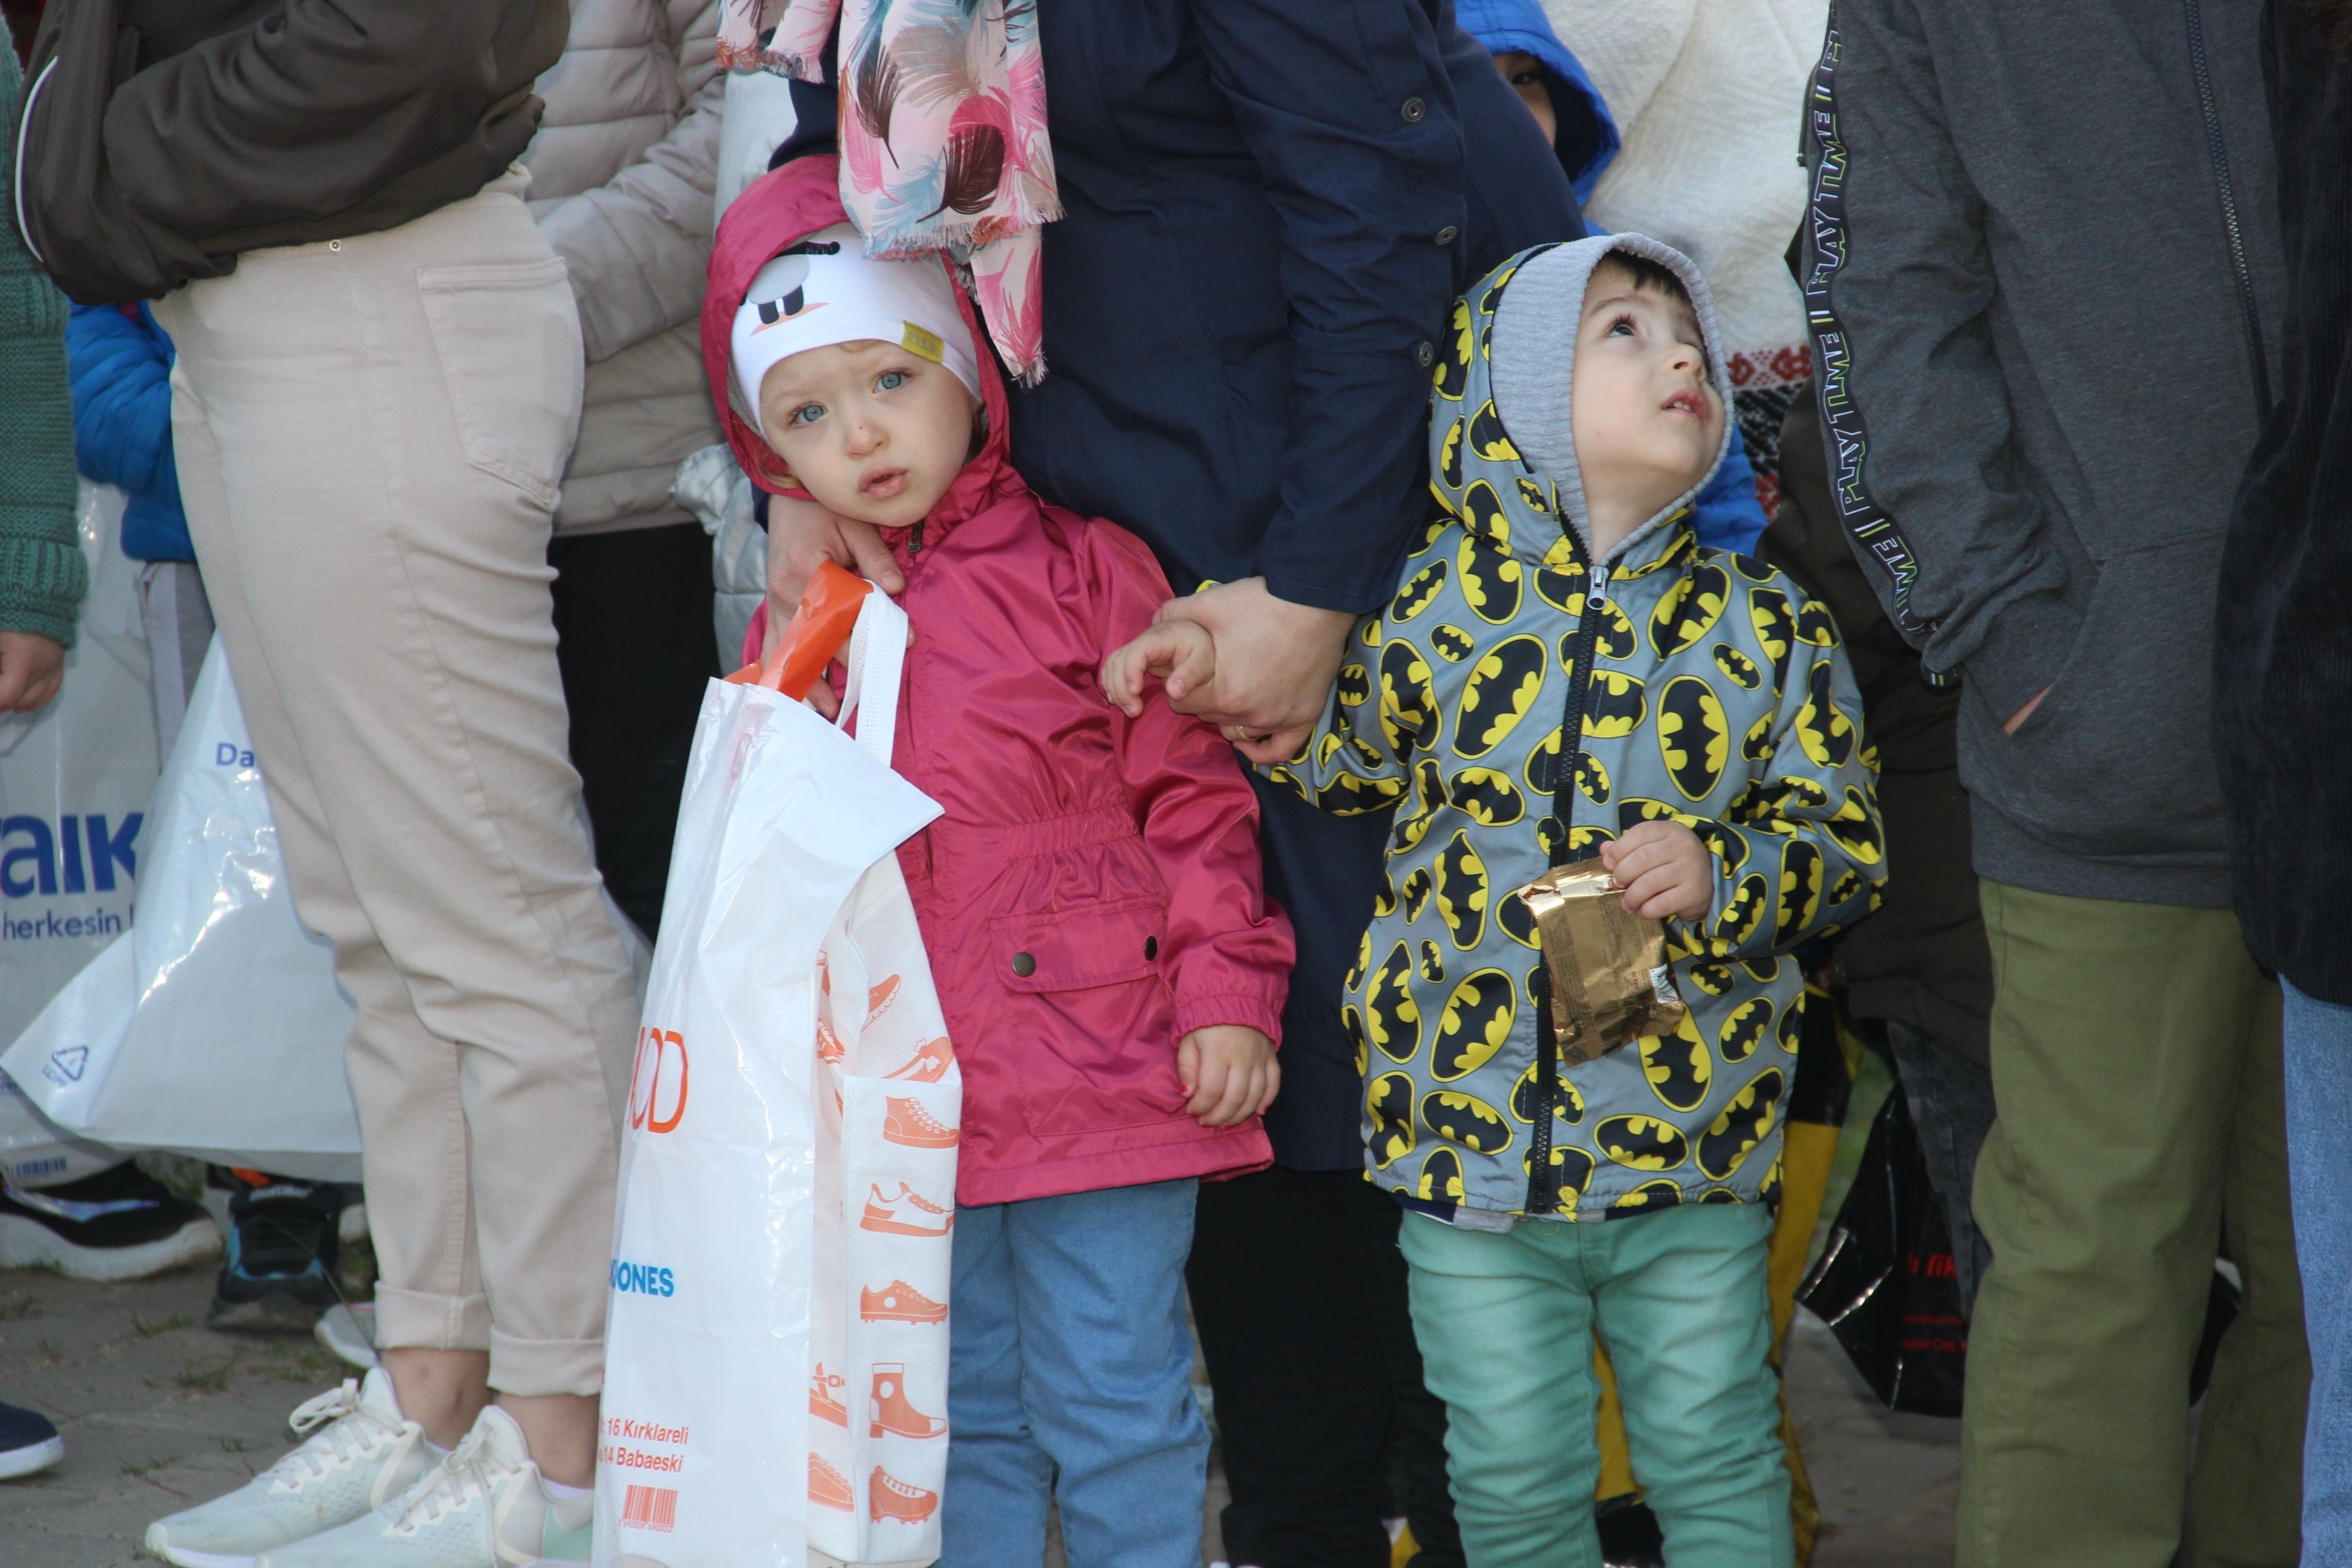 Des adultes se rassemblent sur la place du village et offrent leurs cadeaux aux enfants pour honorer la tradition de la fête de la période de l'Empire ottoman à nos jours dans le village d'Erikler à Kırklareli, dans le nord-ouest de la Turquie, le 3 mai 2022. (Photo IHA)